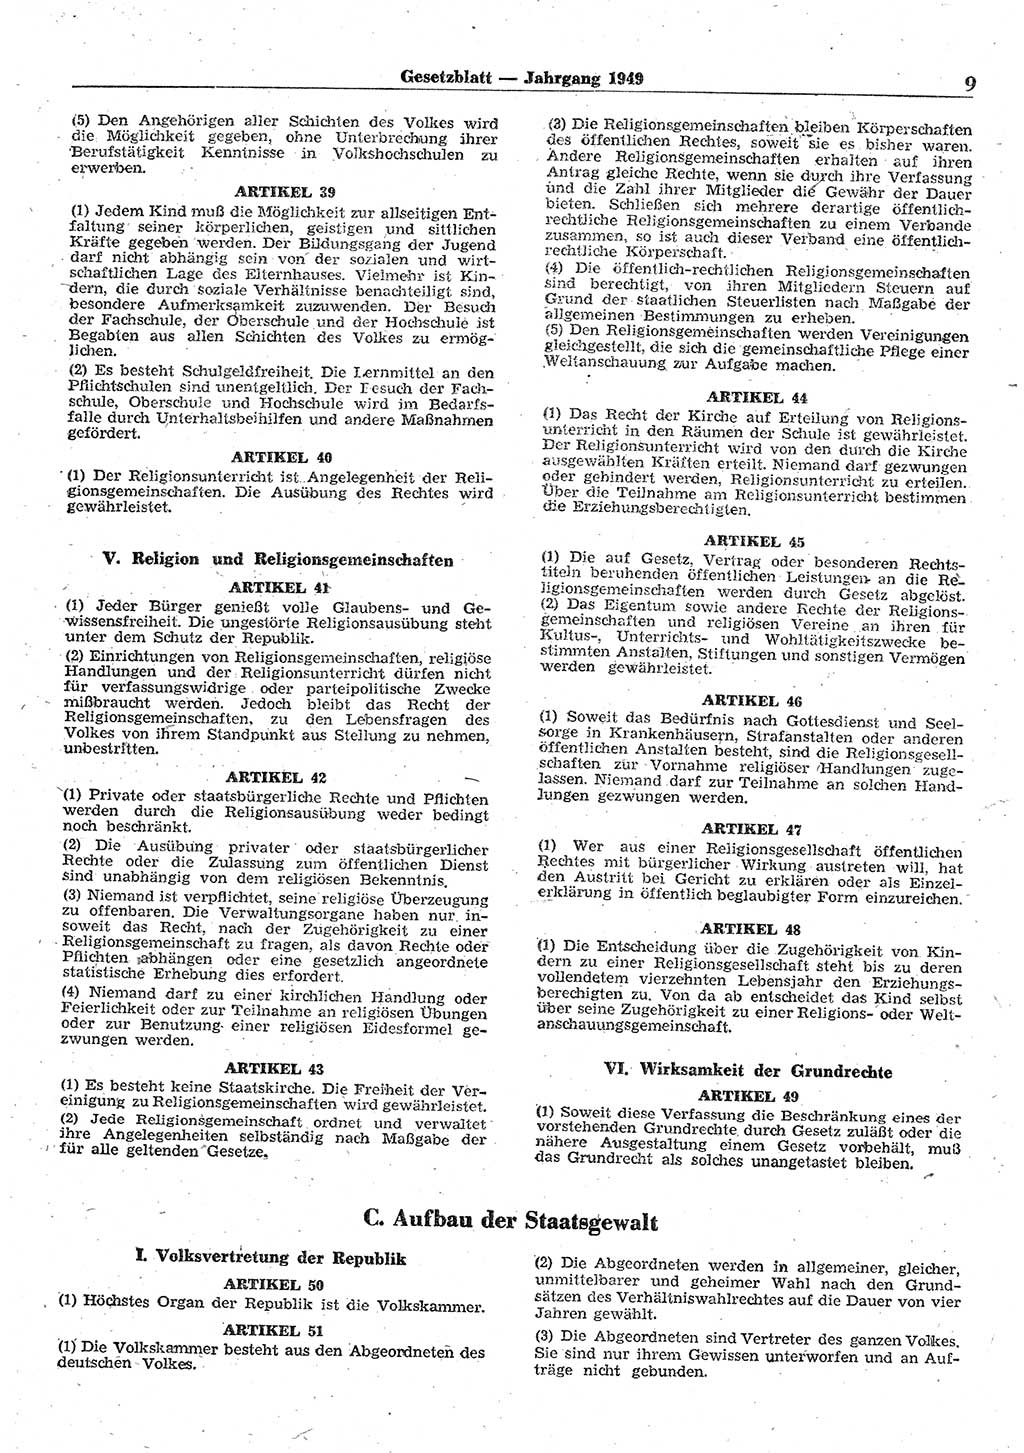 Gesetzblatt (GBl.) der Deutschen Demokratischen Republik (DDR) 1949, Seite 9 (GBl. DDR 1949, S. 9)